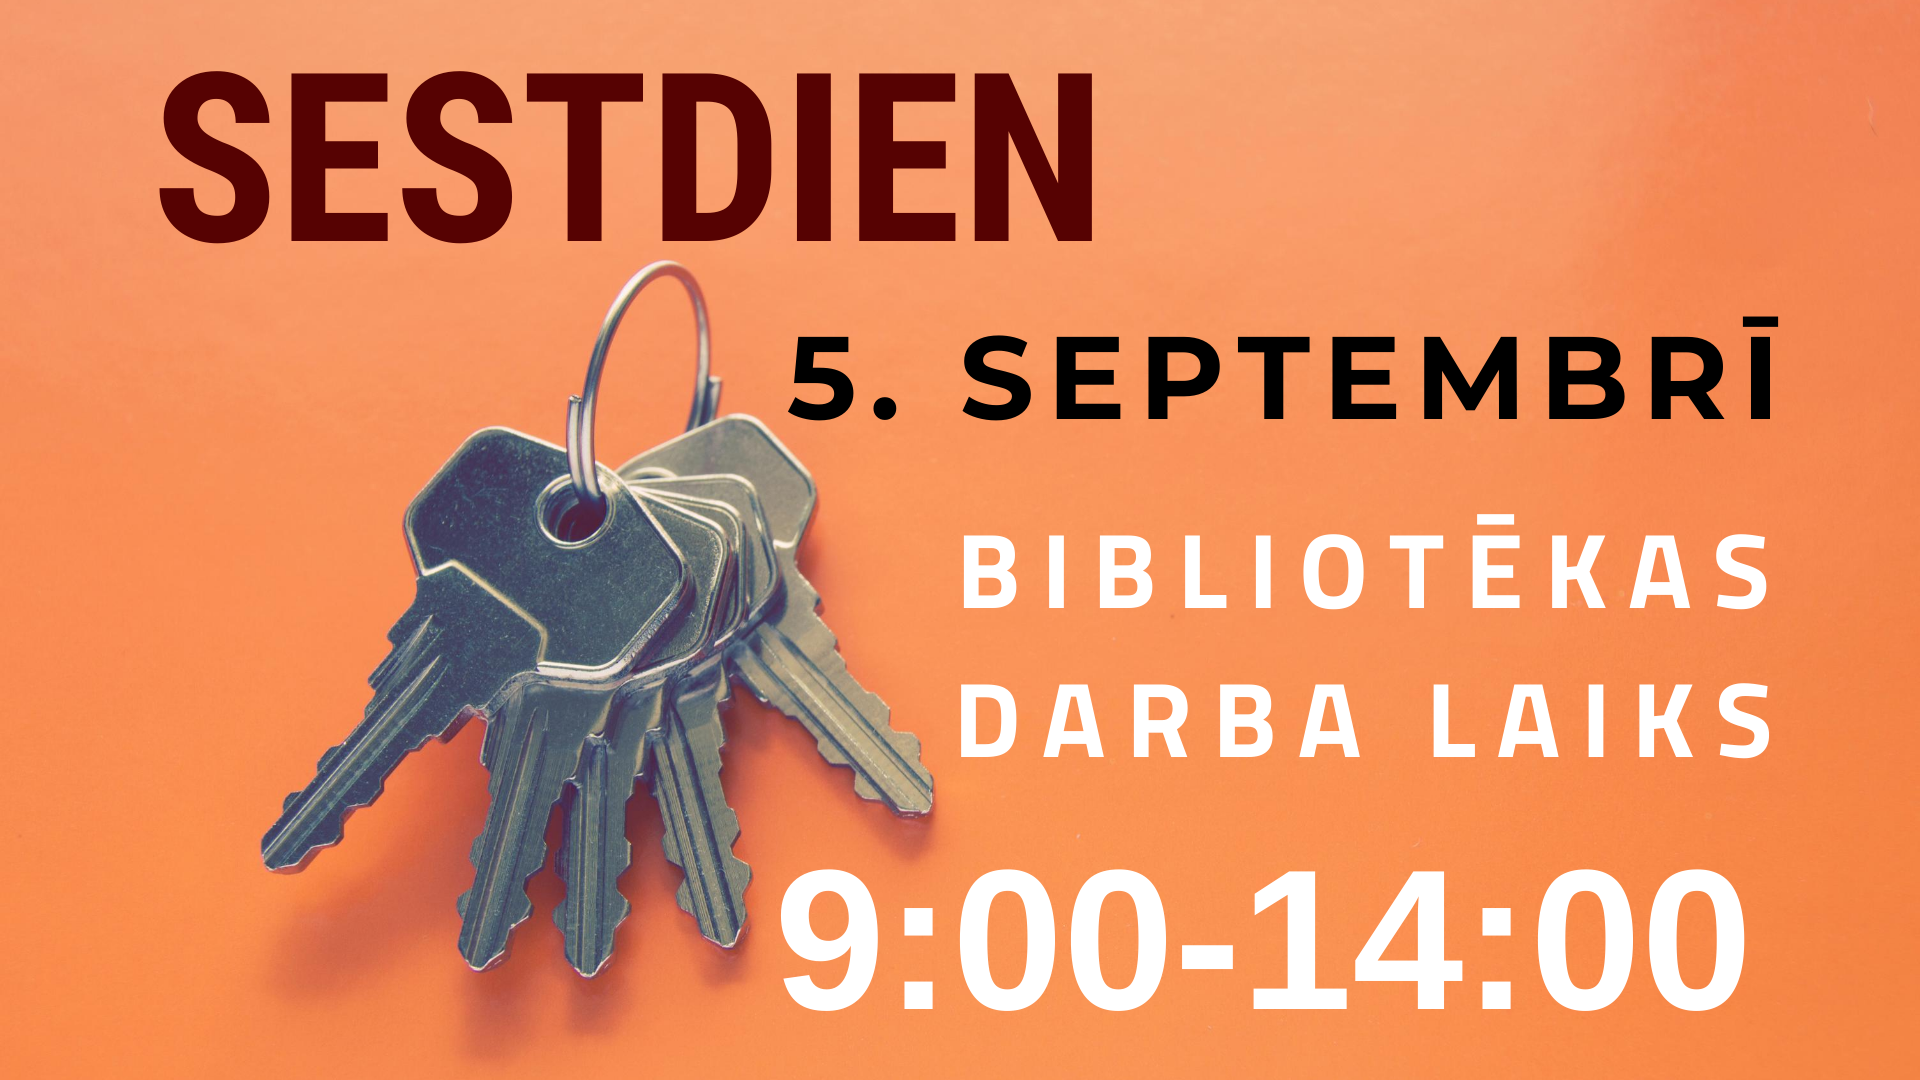 Sestdien, 5. septembrī, bibliotēka lasītājiem atvērta no plkst. 9.00 līdz 14.00